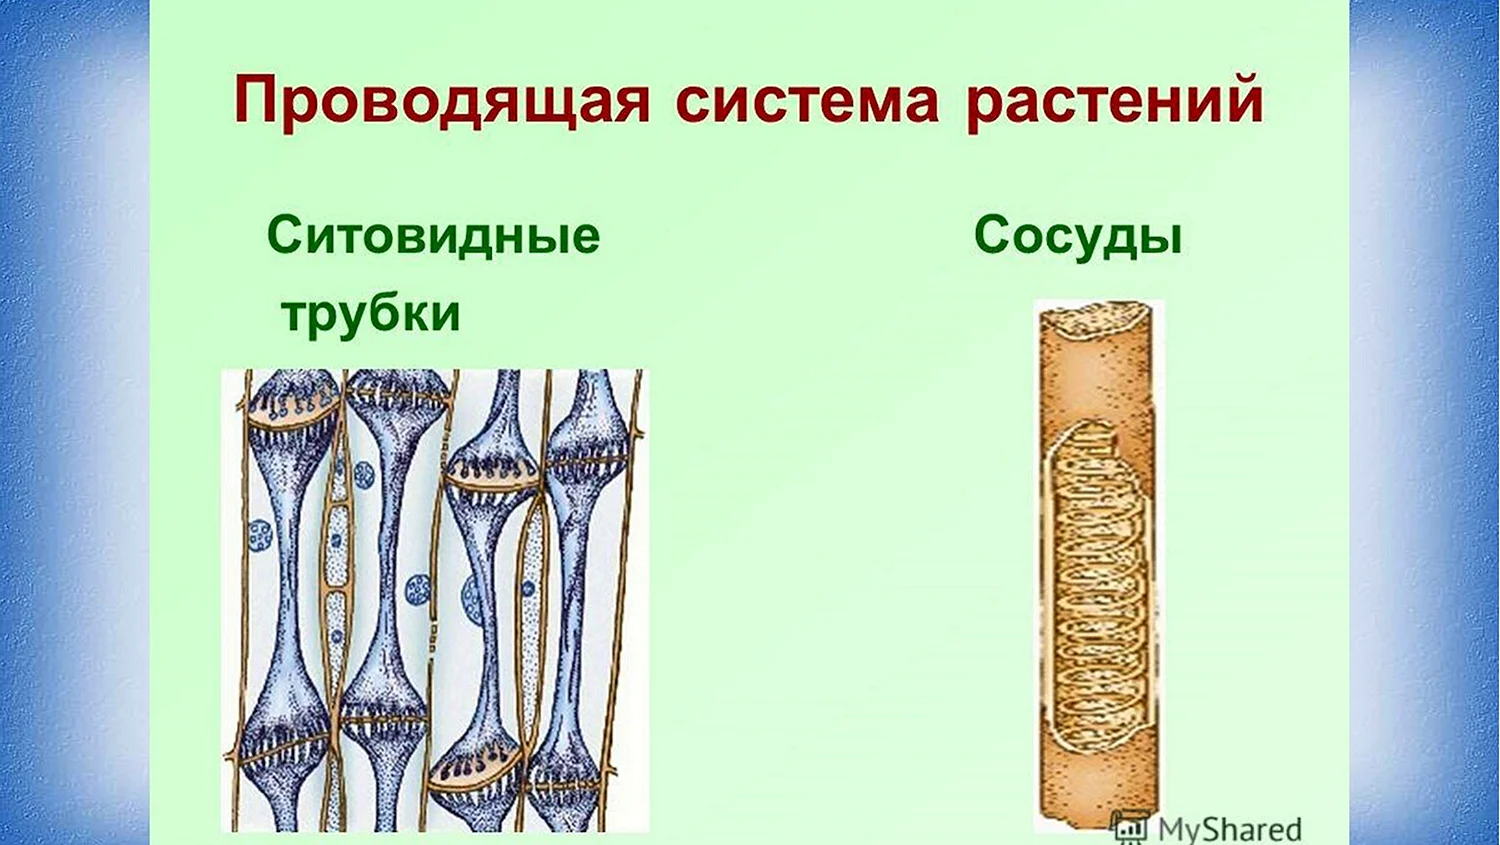 Сосуды древесины и ситовидные трубки